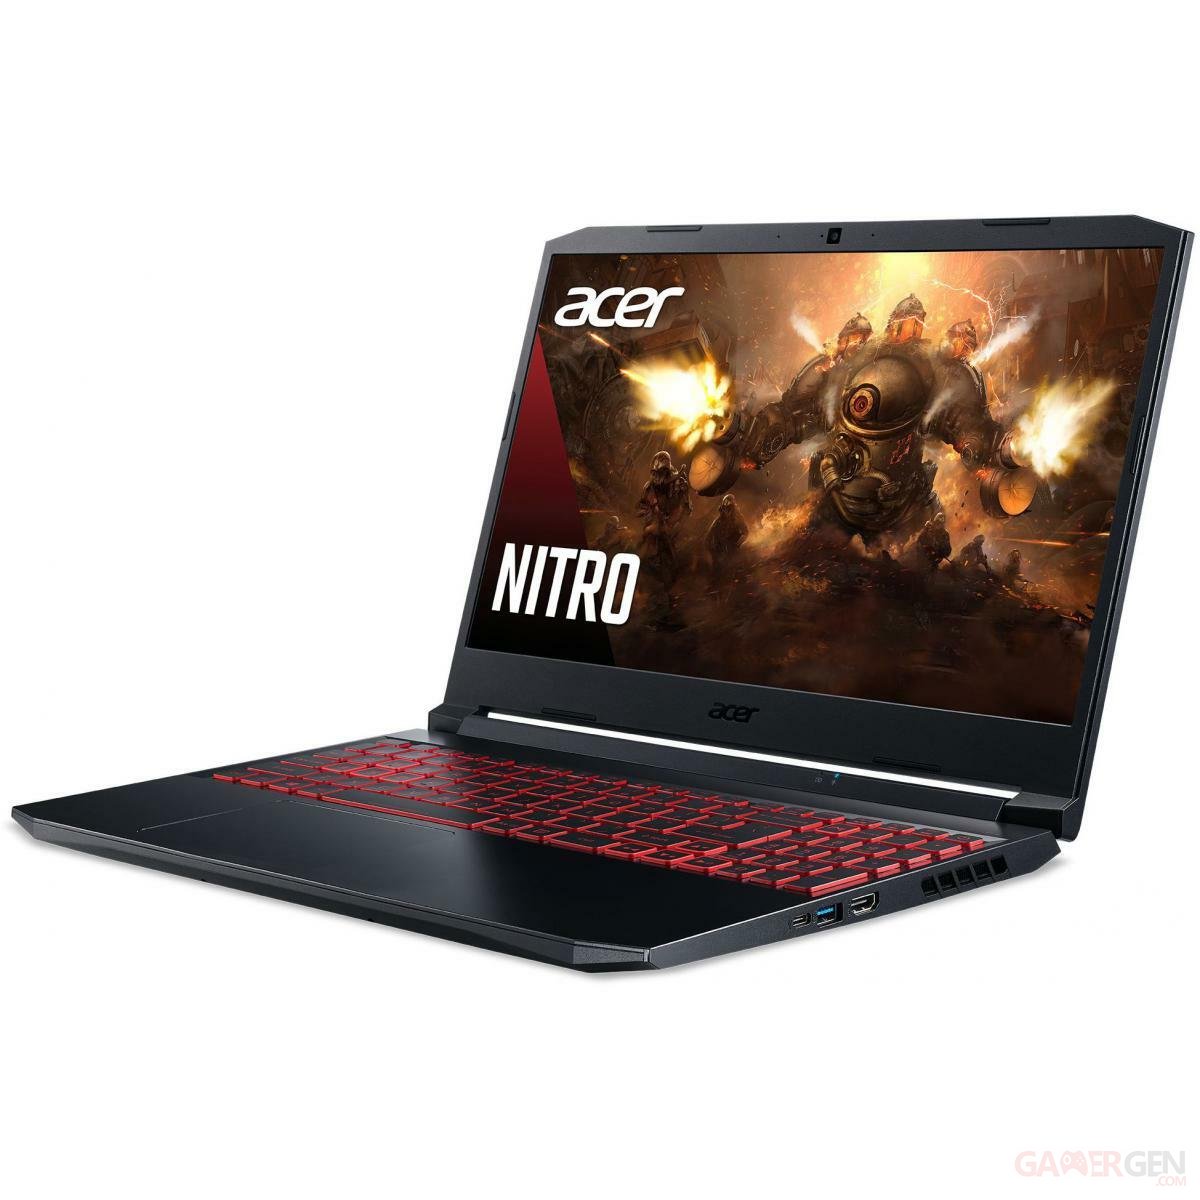 Le Bon Plan du Jour : PC Acer Nitro 5 avec Dragonball FighterZ offert est à  563 euros - Numerama